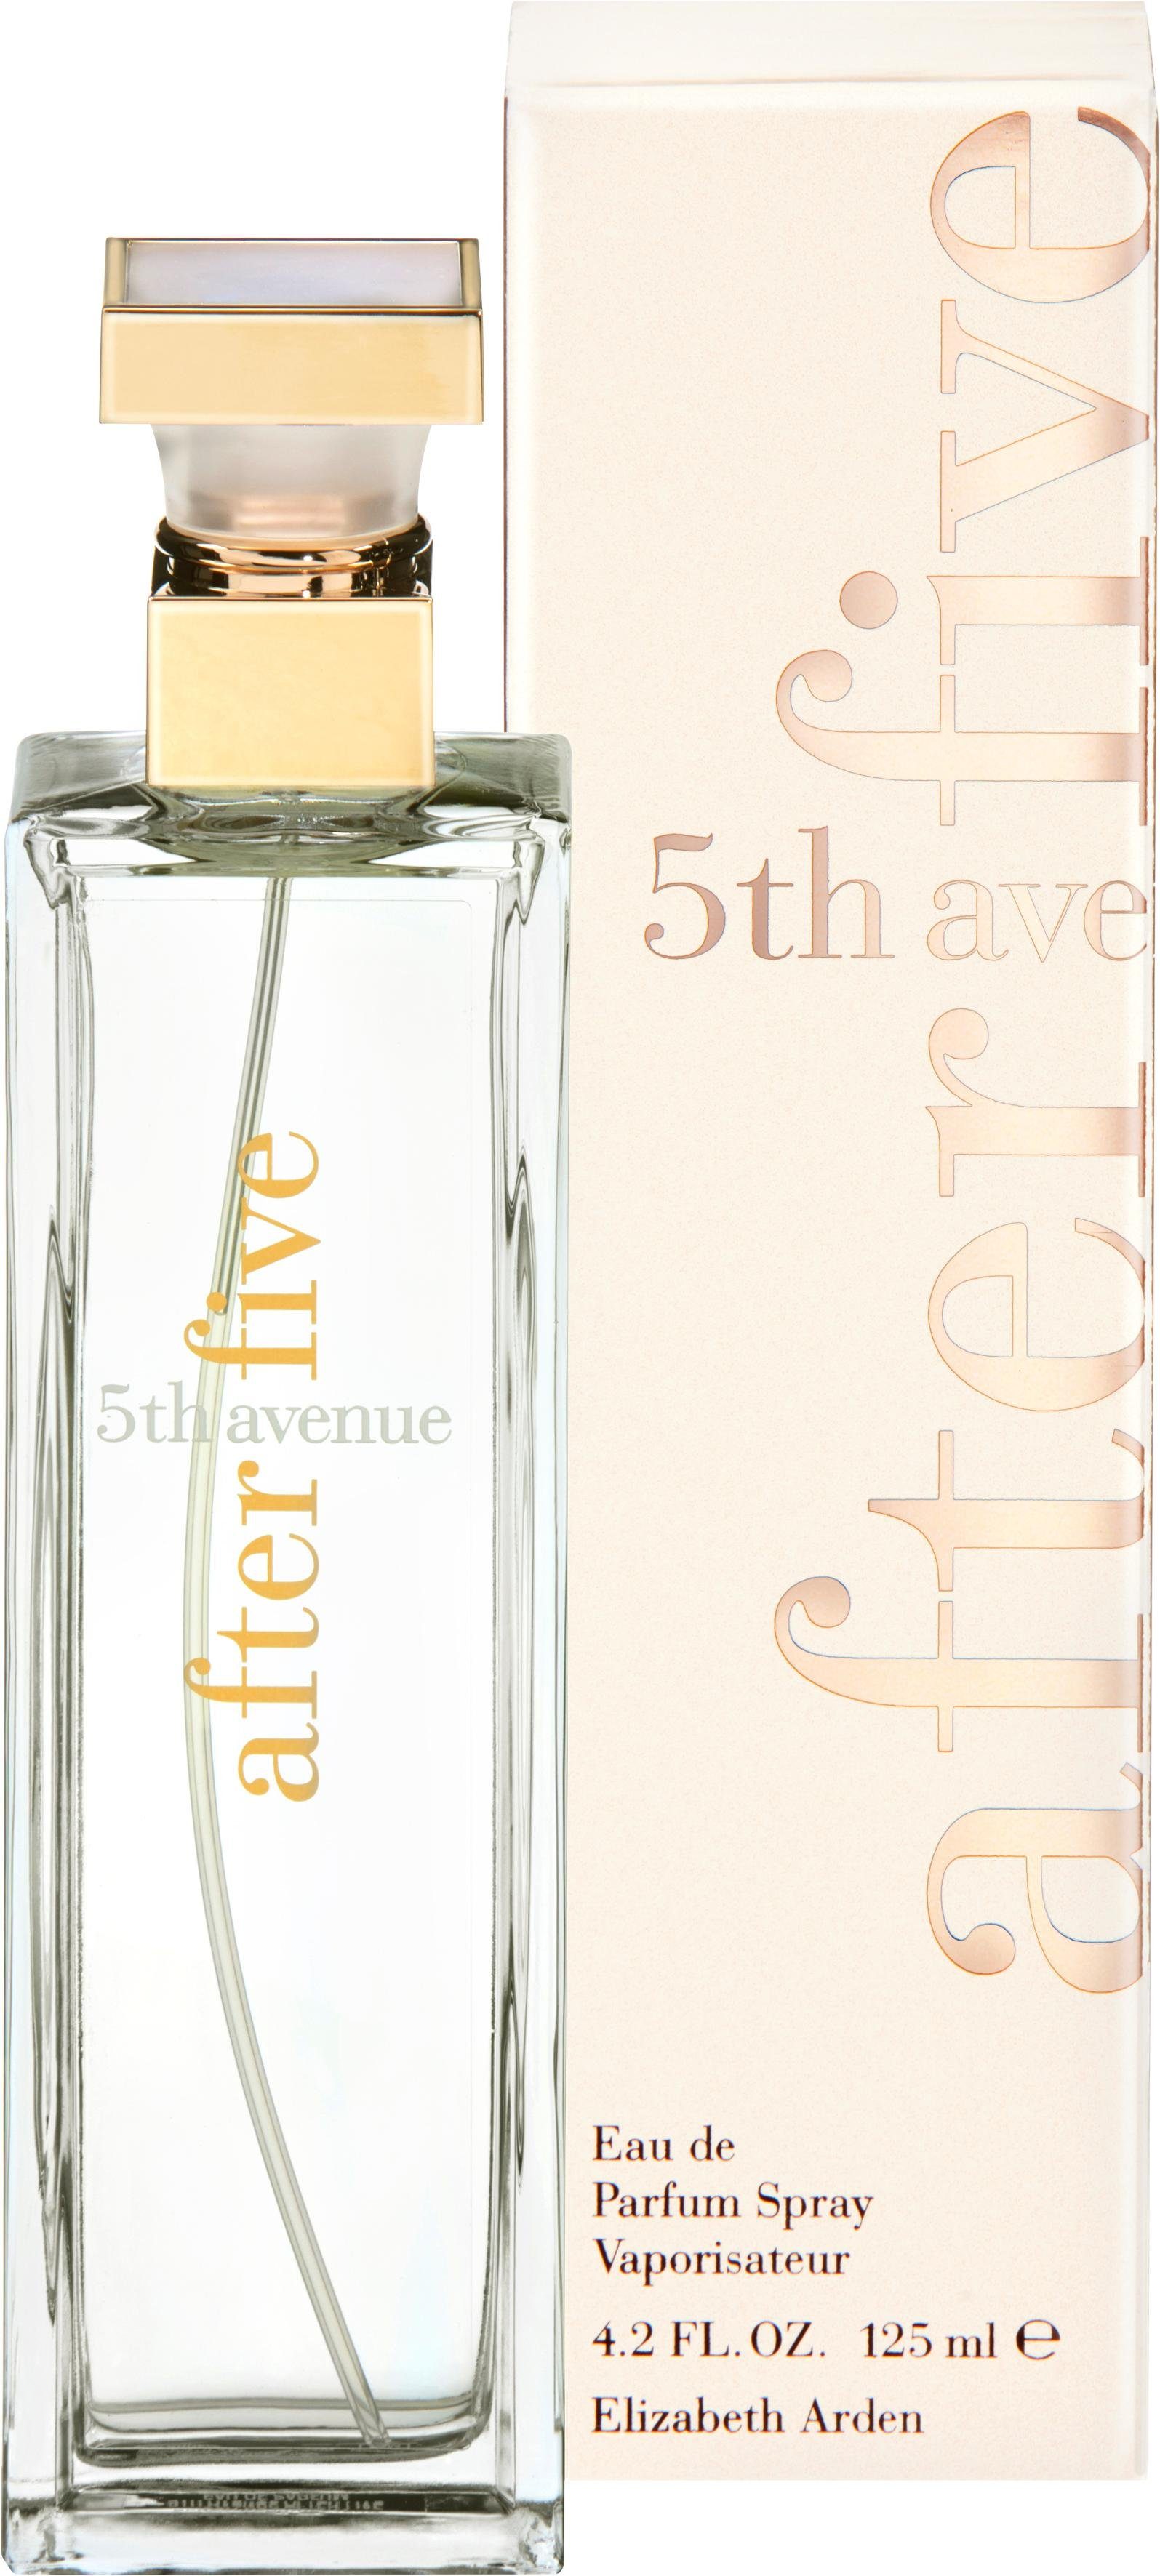 Arden After Elizabeth Five 5th Parfum de Eau Avenue